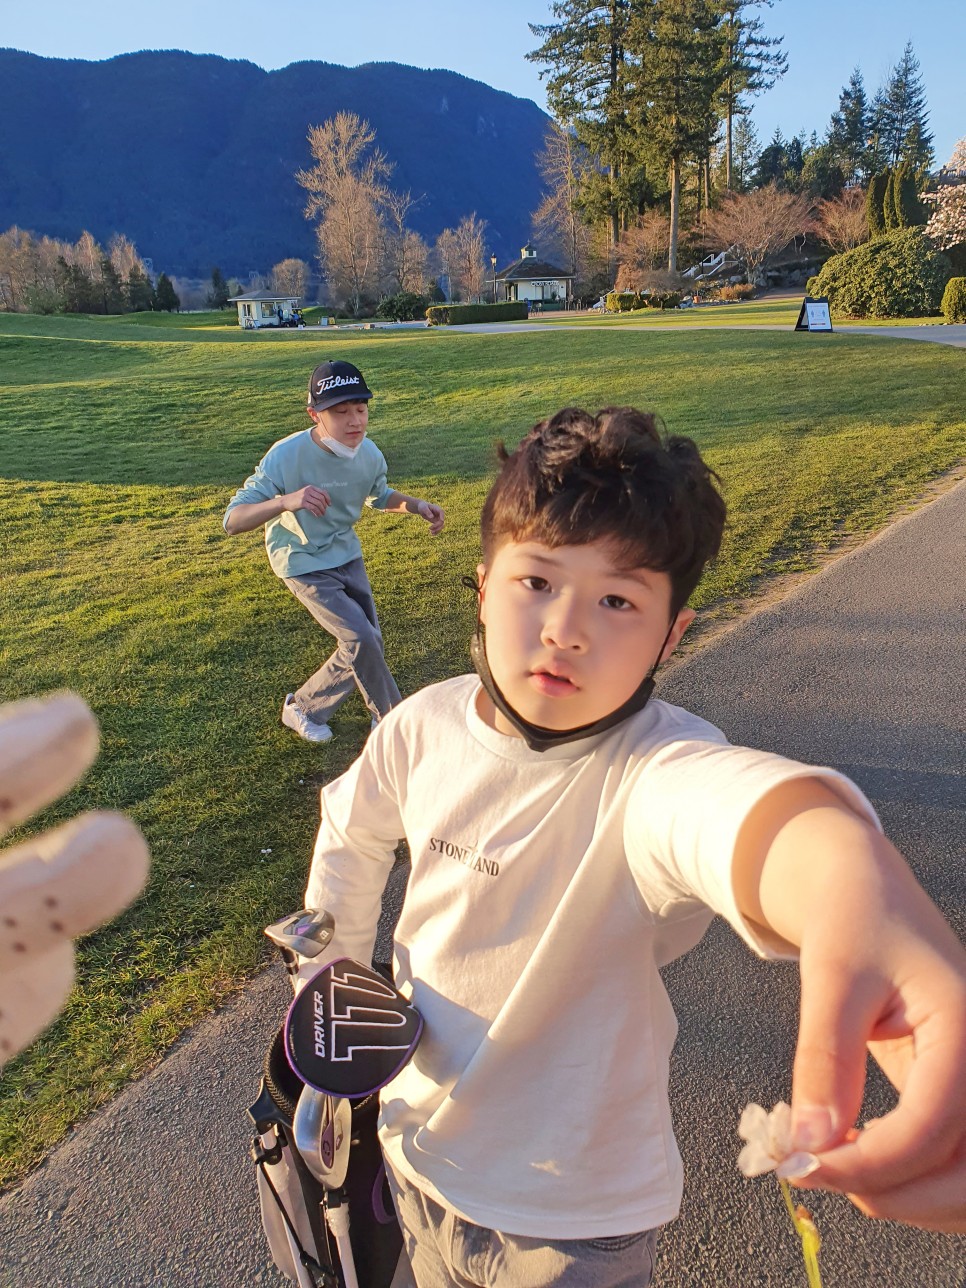 밴쿠버 골프시즌 is back! 벚꽃명소 열일중 Swaneset golf course (Vancouver 일상)